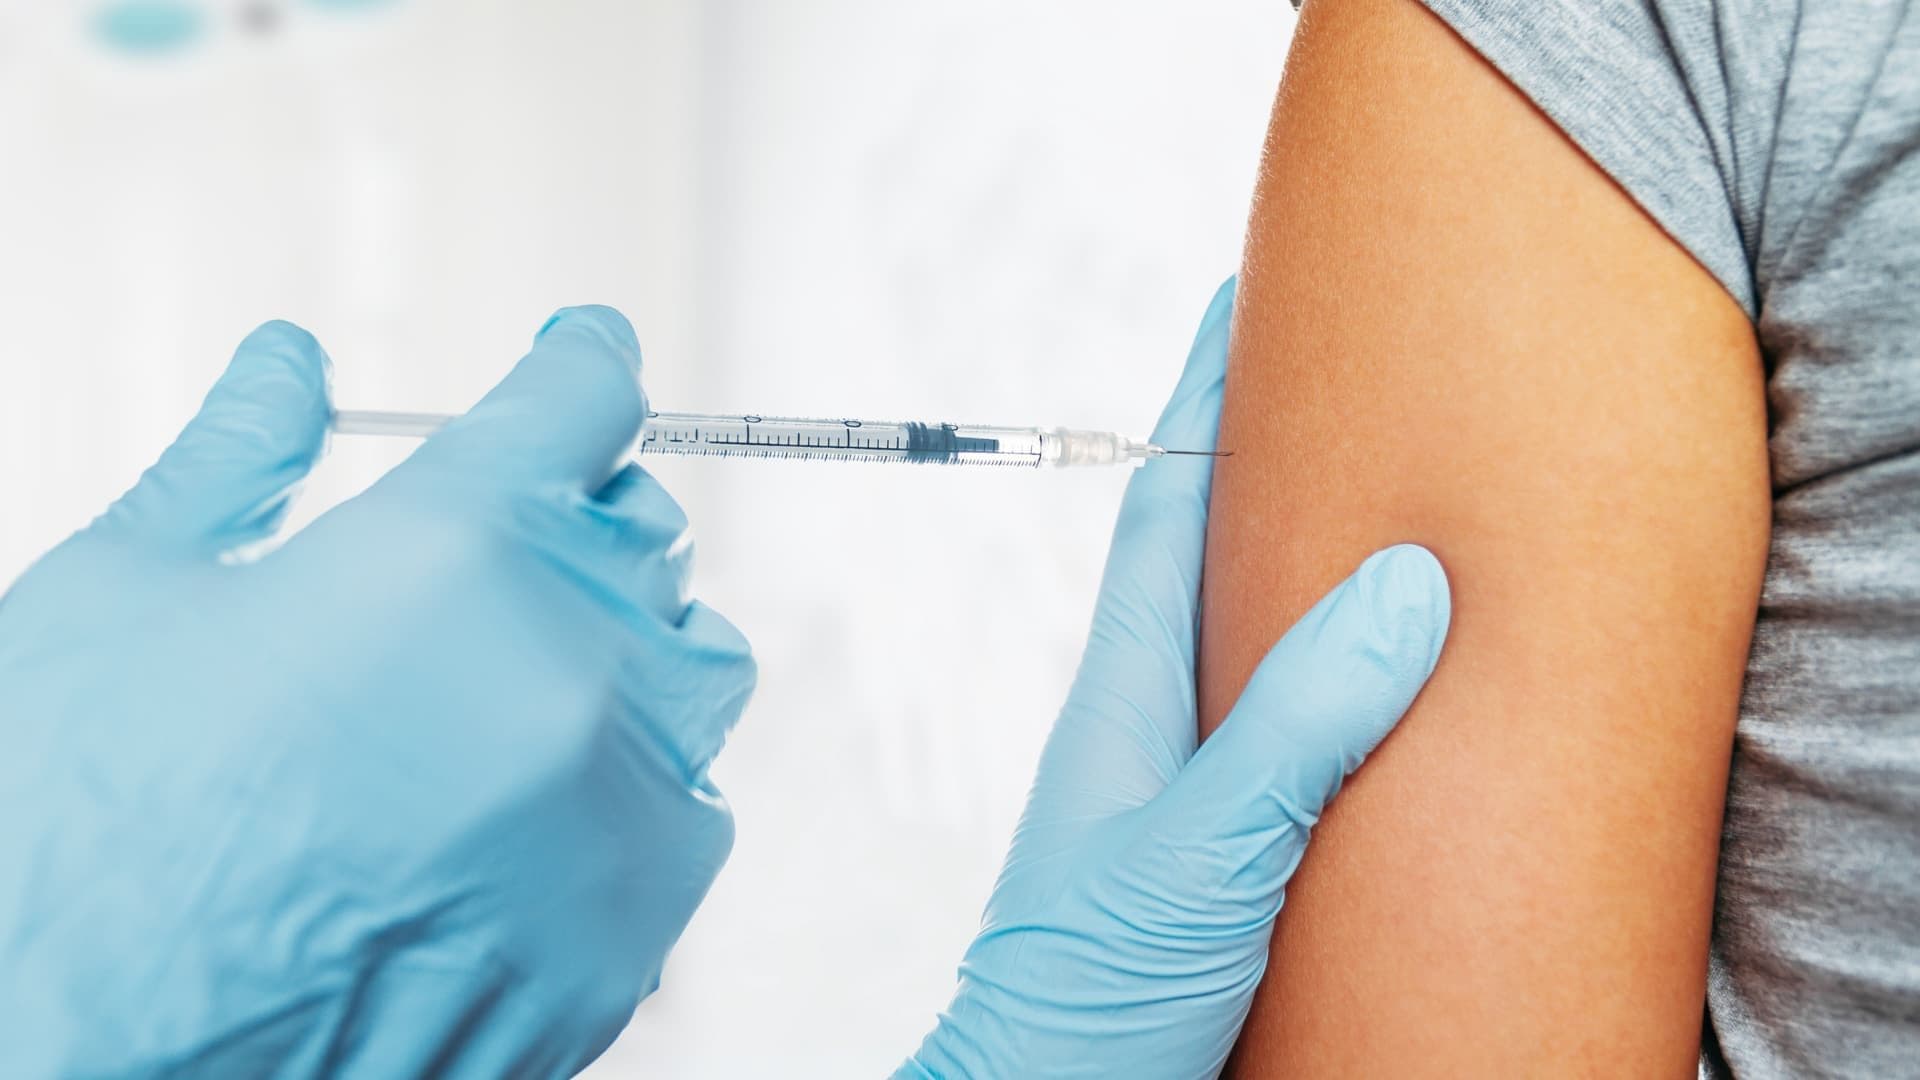 Dermatiti e vaccini anti SARS-COV-2: cosa dicono le principali società scientifiche